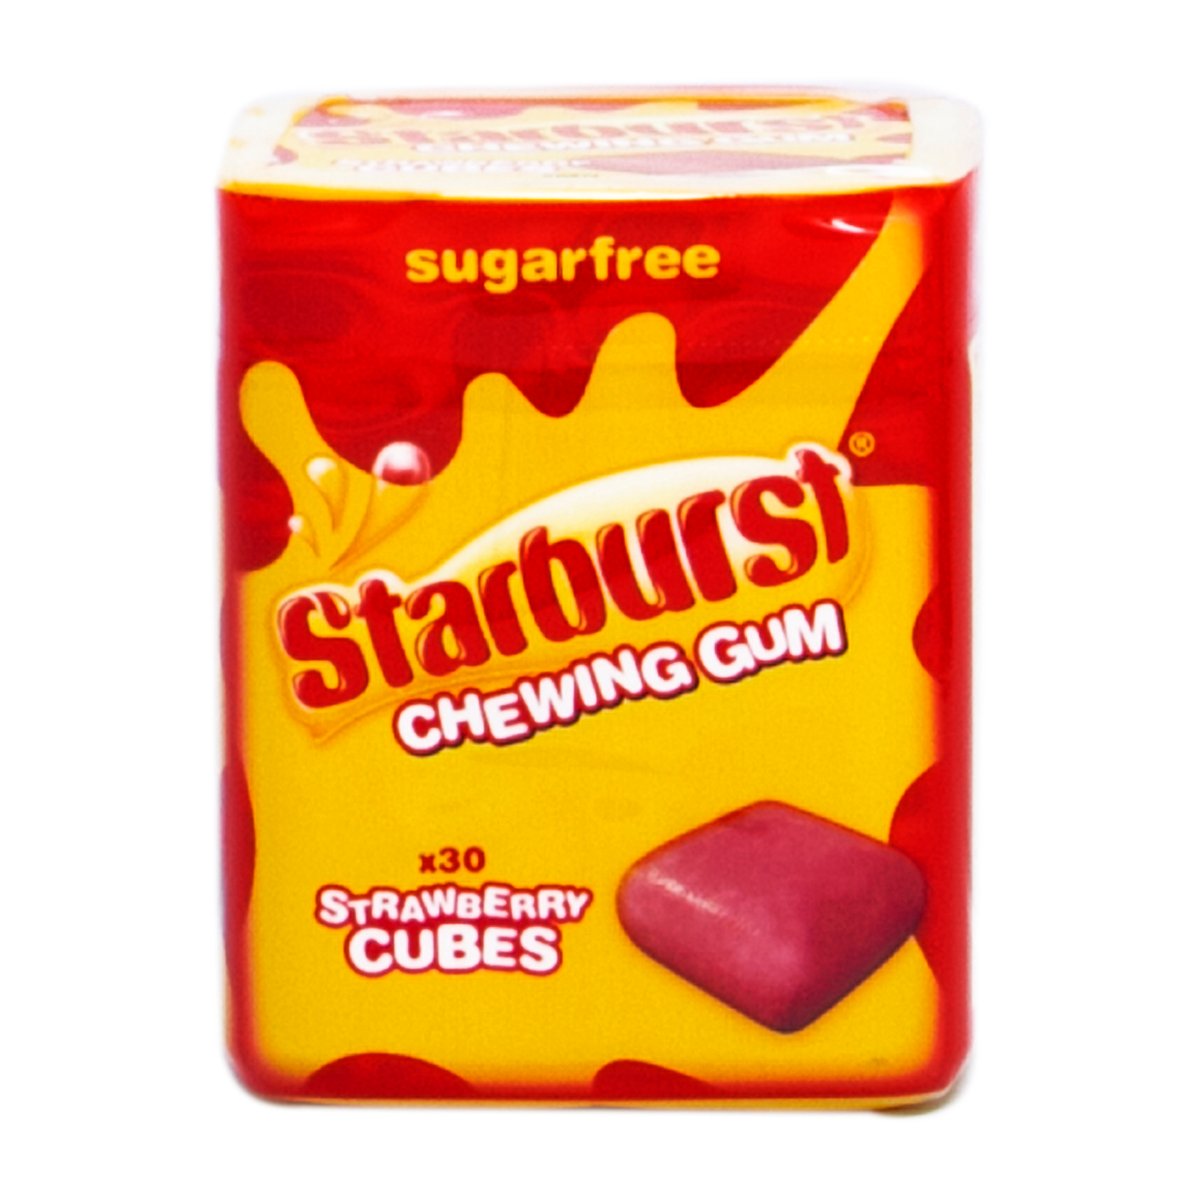 Starburst Strawberry Chewing Gum Sugar Free 72 g